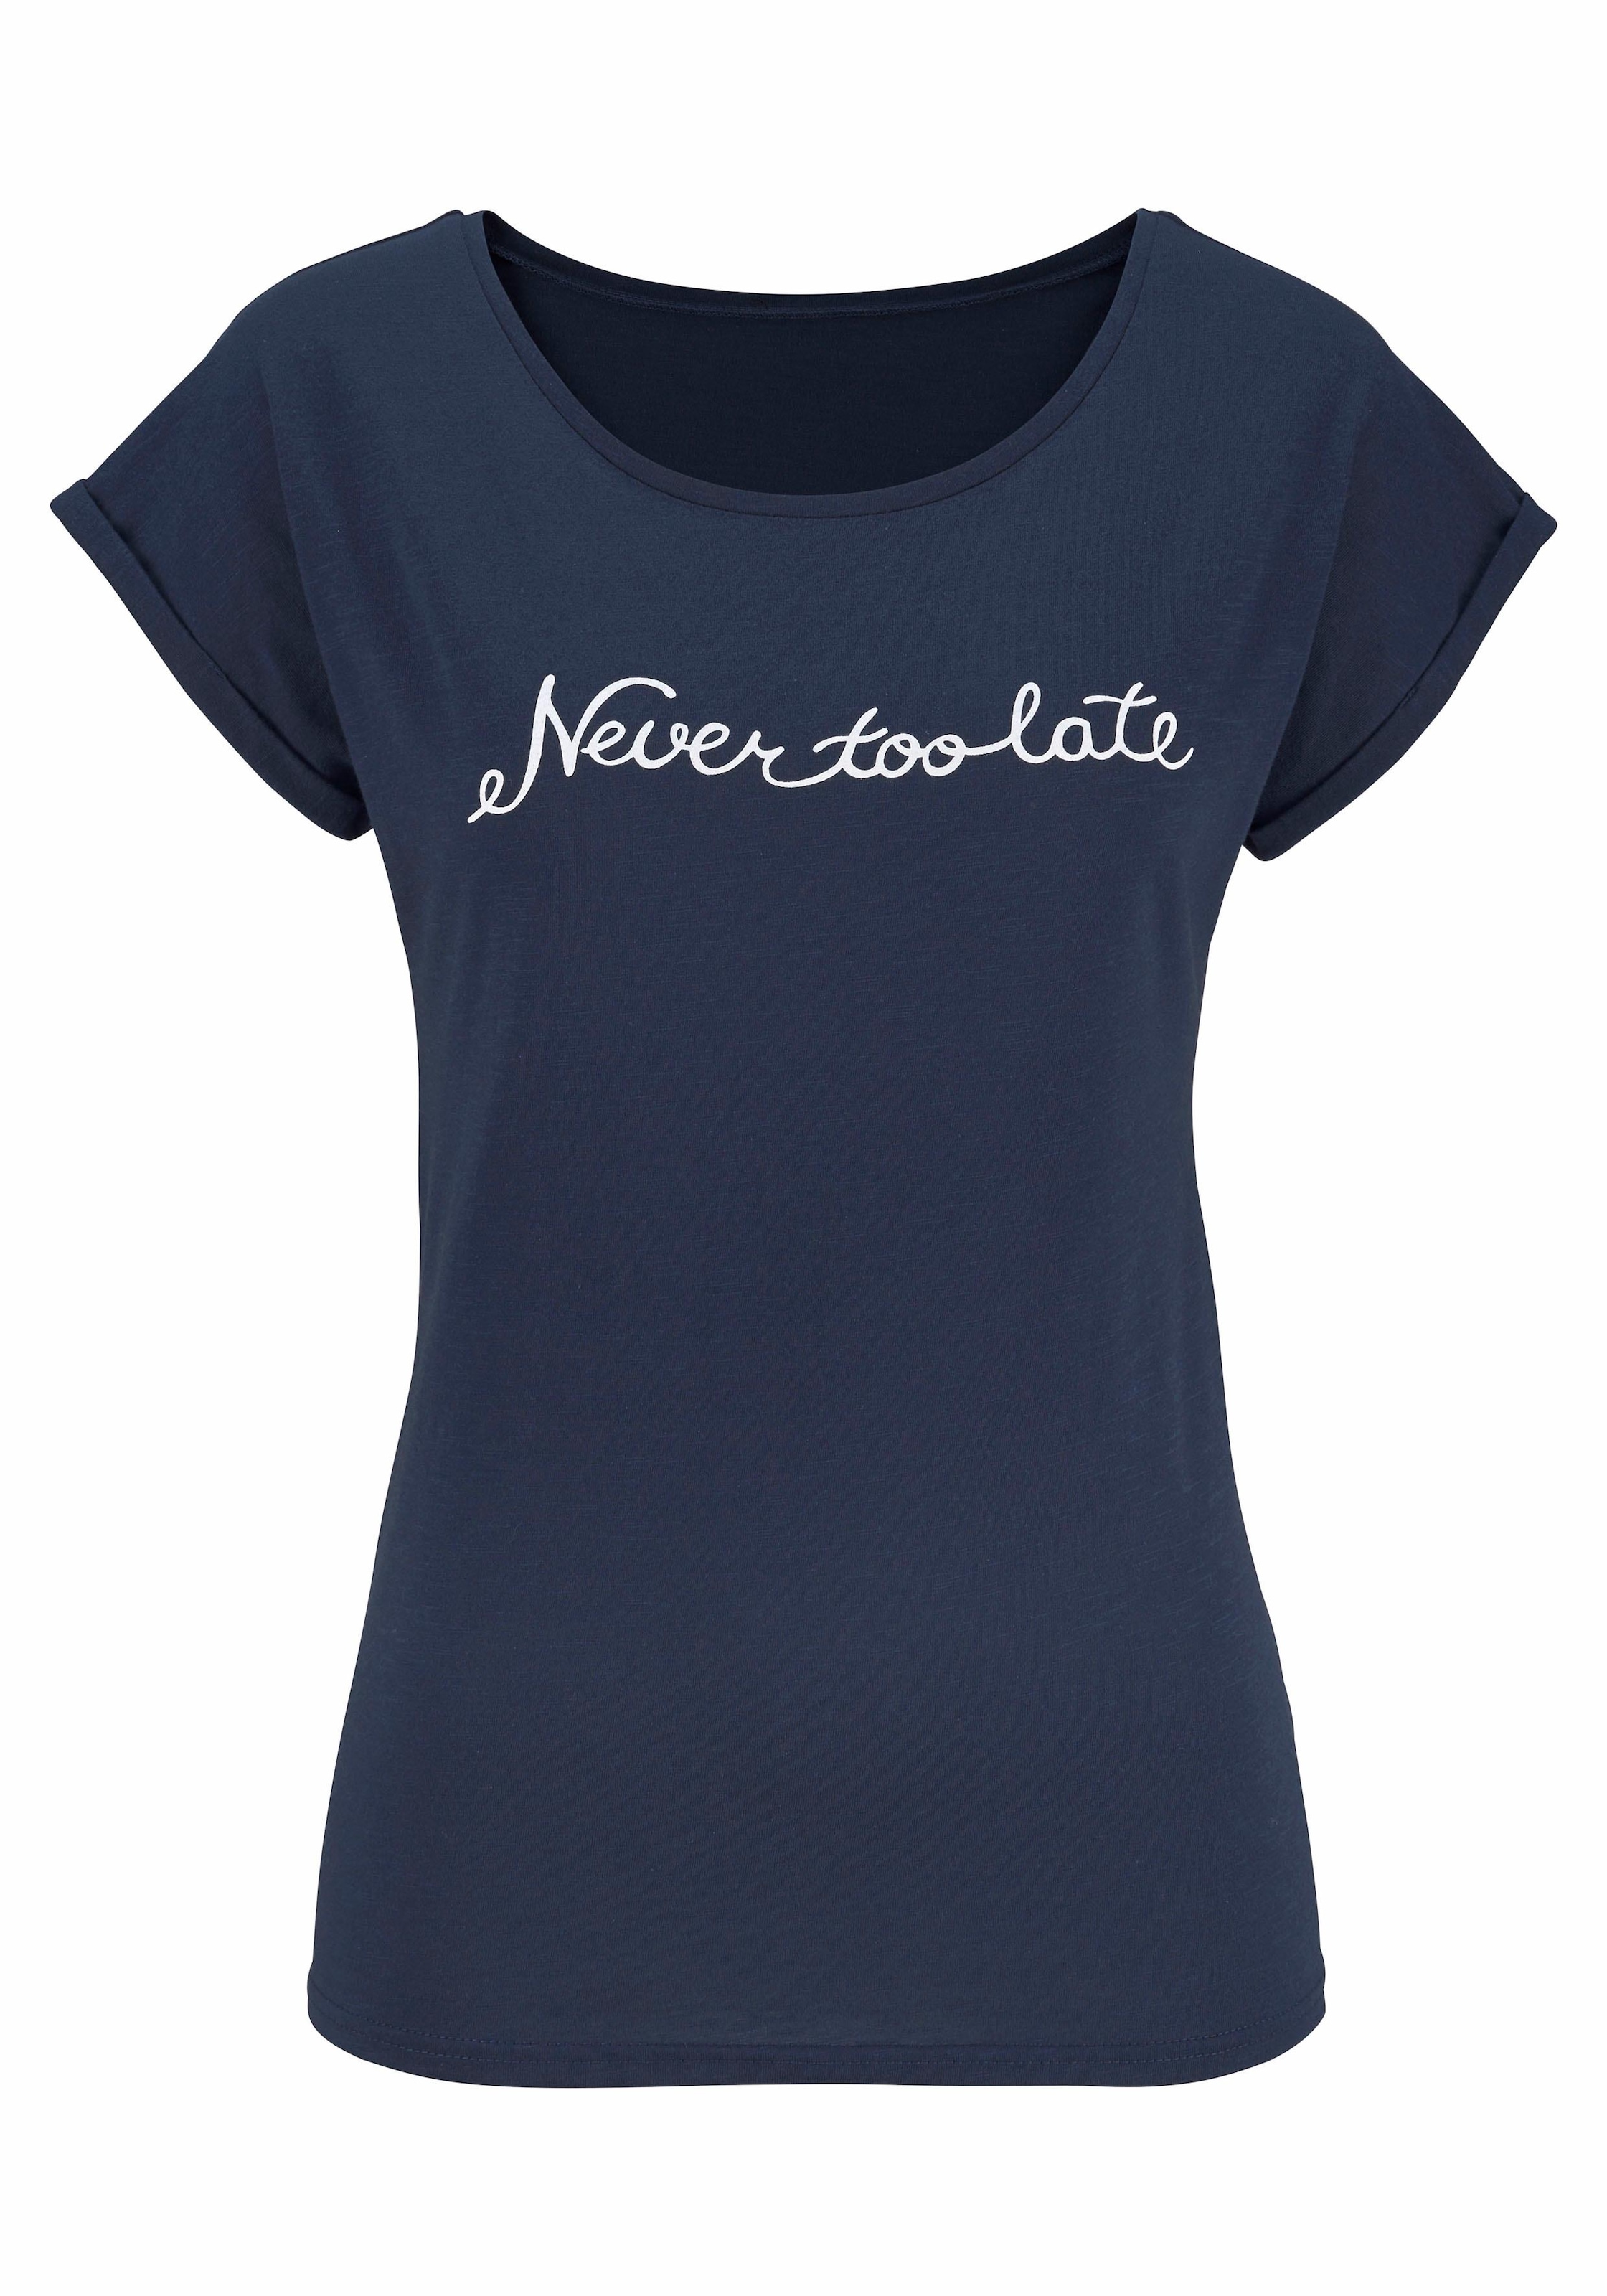 Beachtime T-Shirt, mit modischem Sprüche Frontdruck "Never too late"